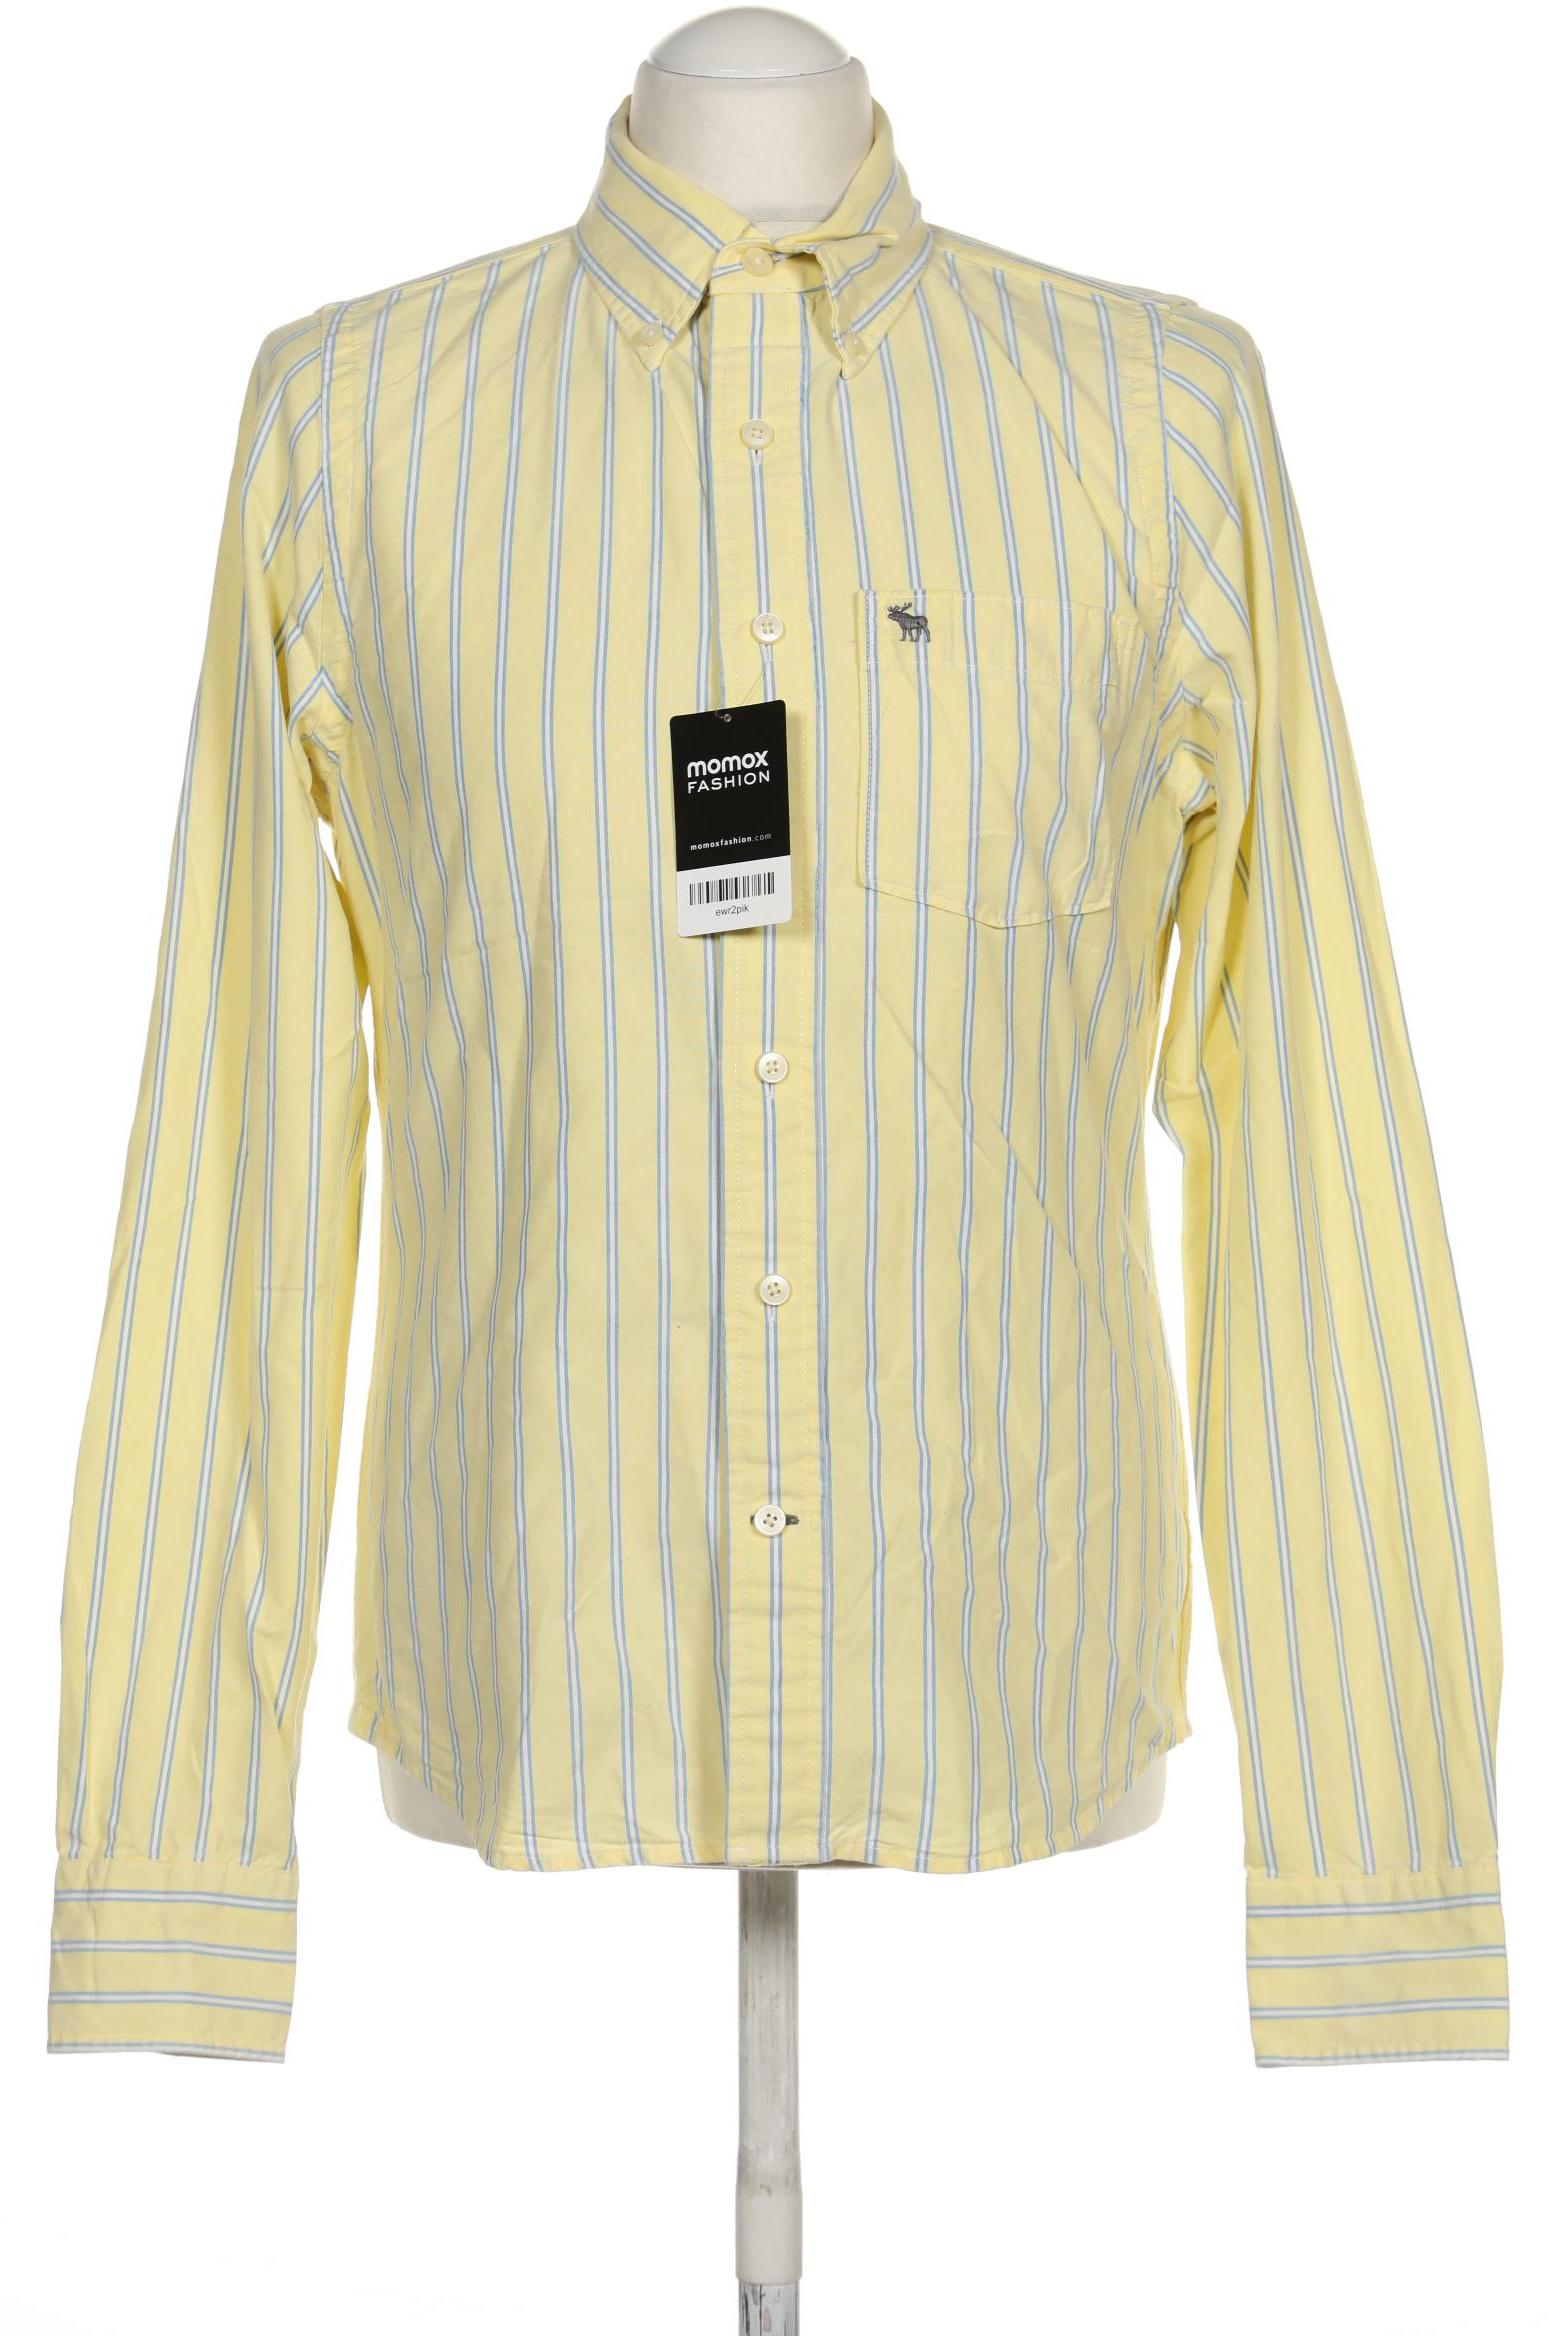 Abercrombie & Fitch Herren Hemd, gelb von Abercrombie & Fitch